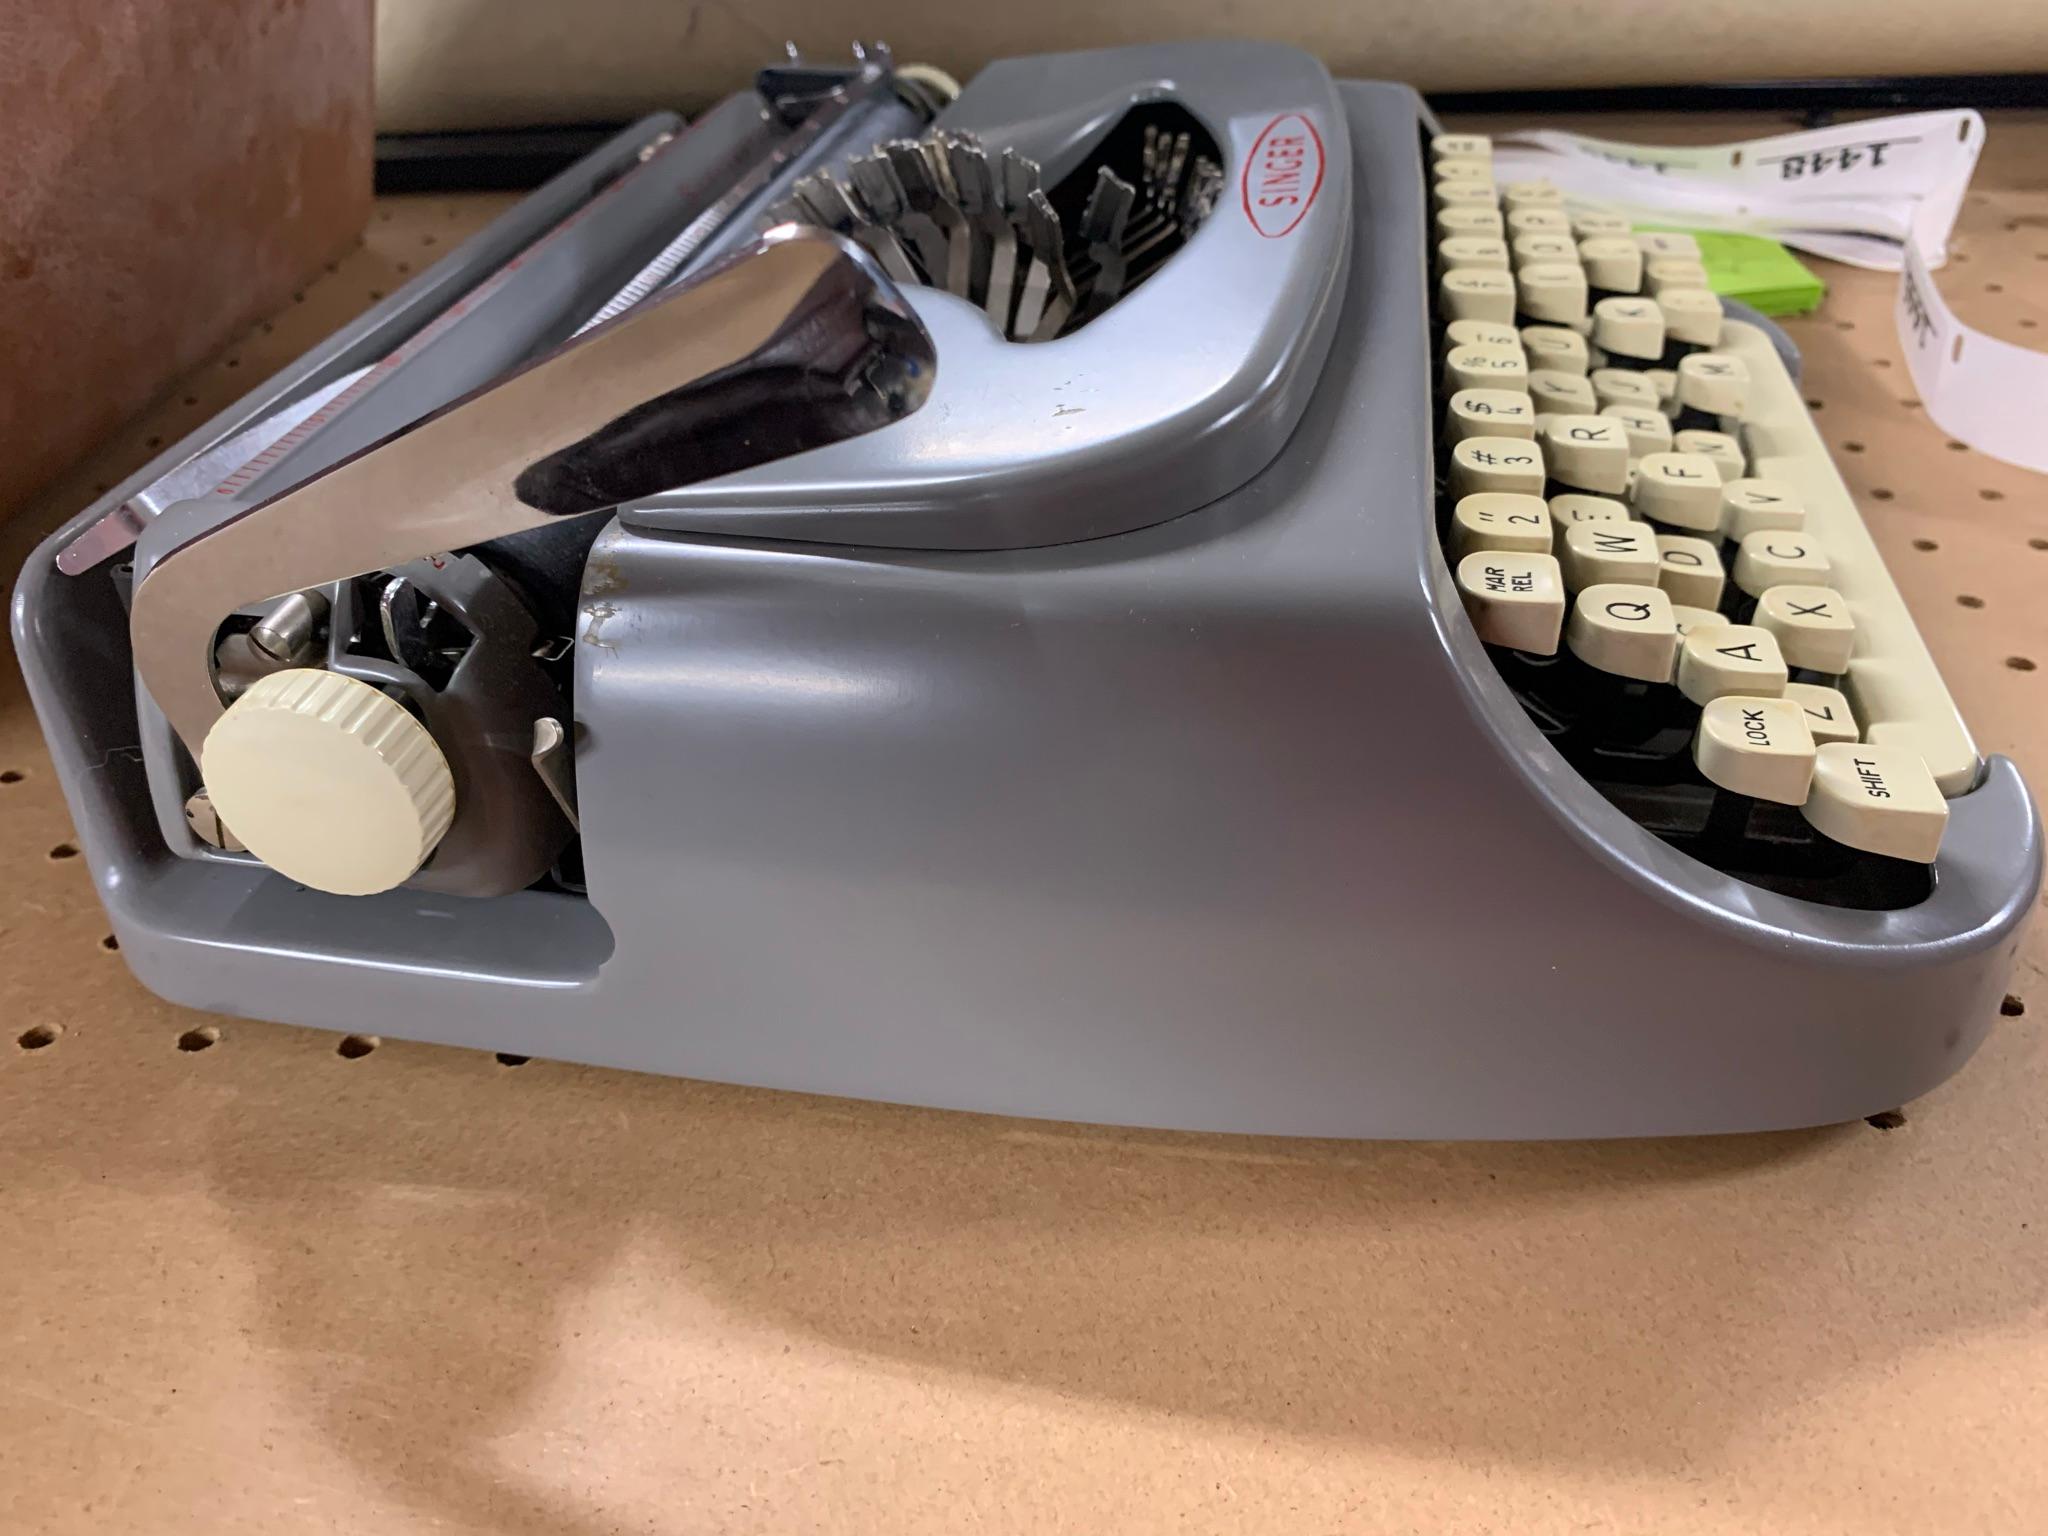 Singer Portable Typewriter with Case